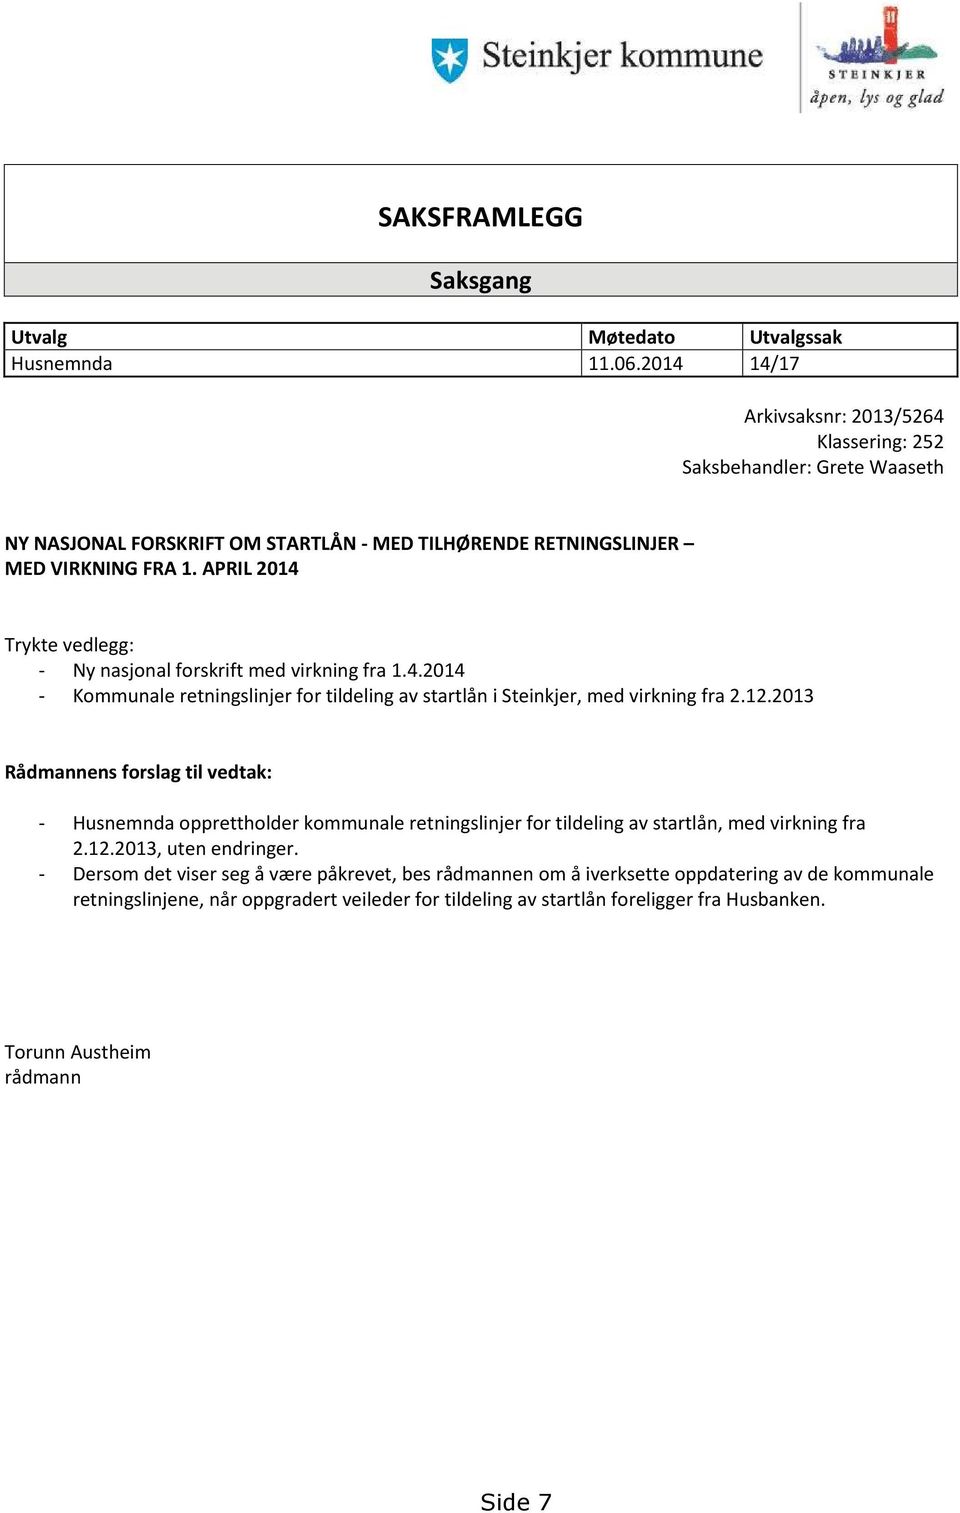 APRIL 2014 Trykte vedlegg: - Ny nasjonal forskrift med virkning fra 1.4.2014 - Kommunale retningslinjer for tildeling av startlån i Steinkjer, med virkning fra 2.12.